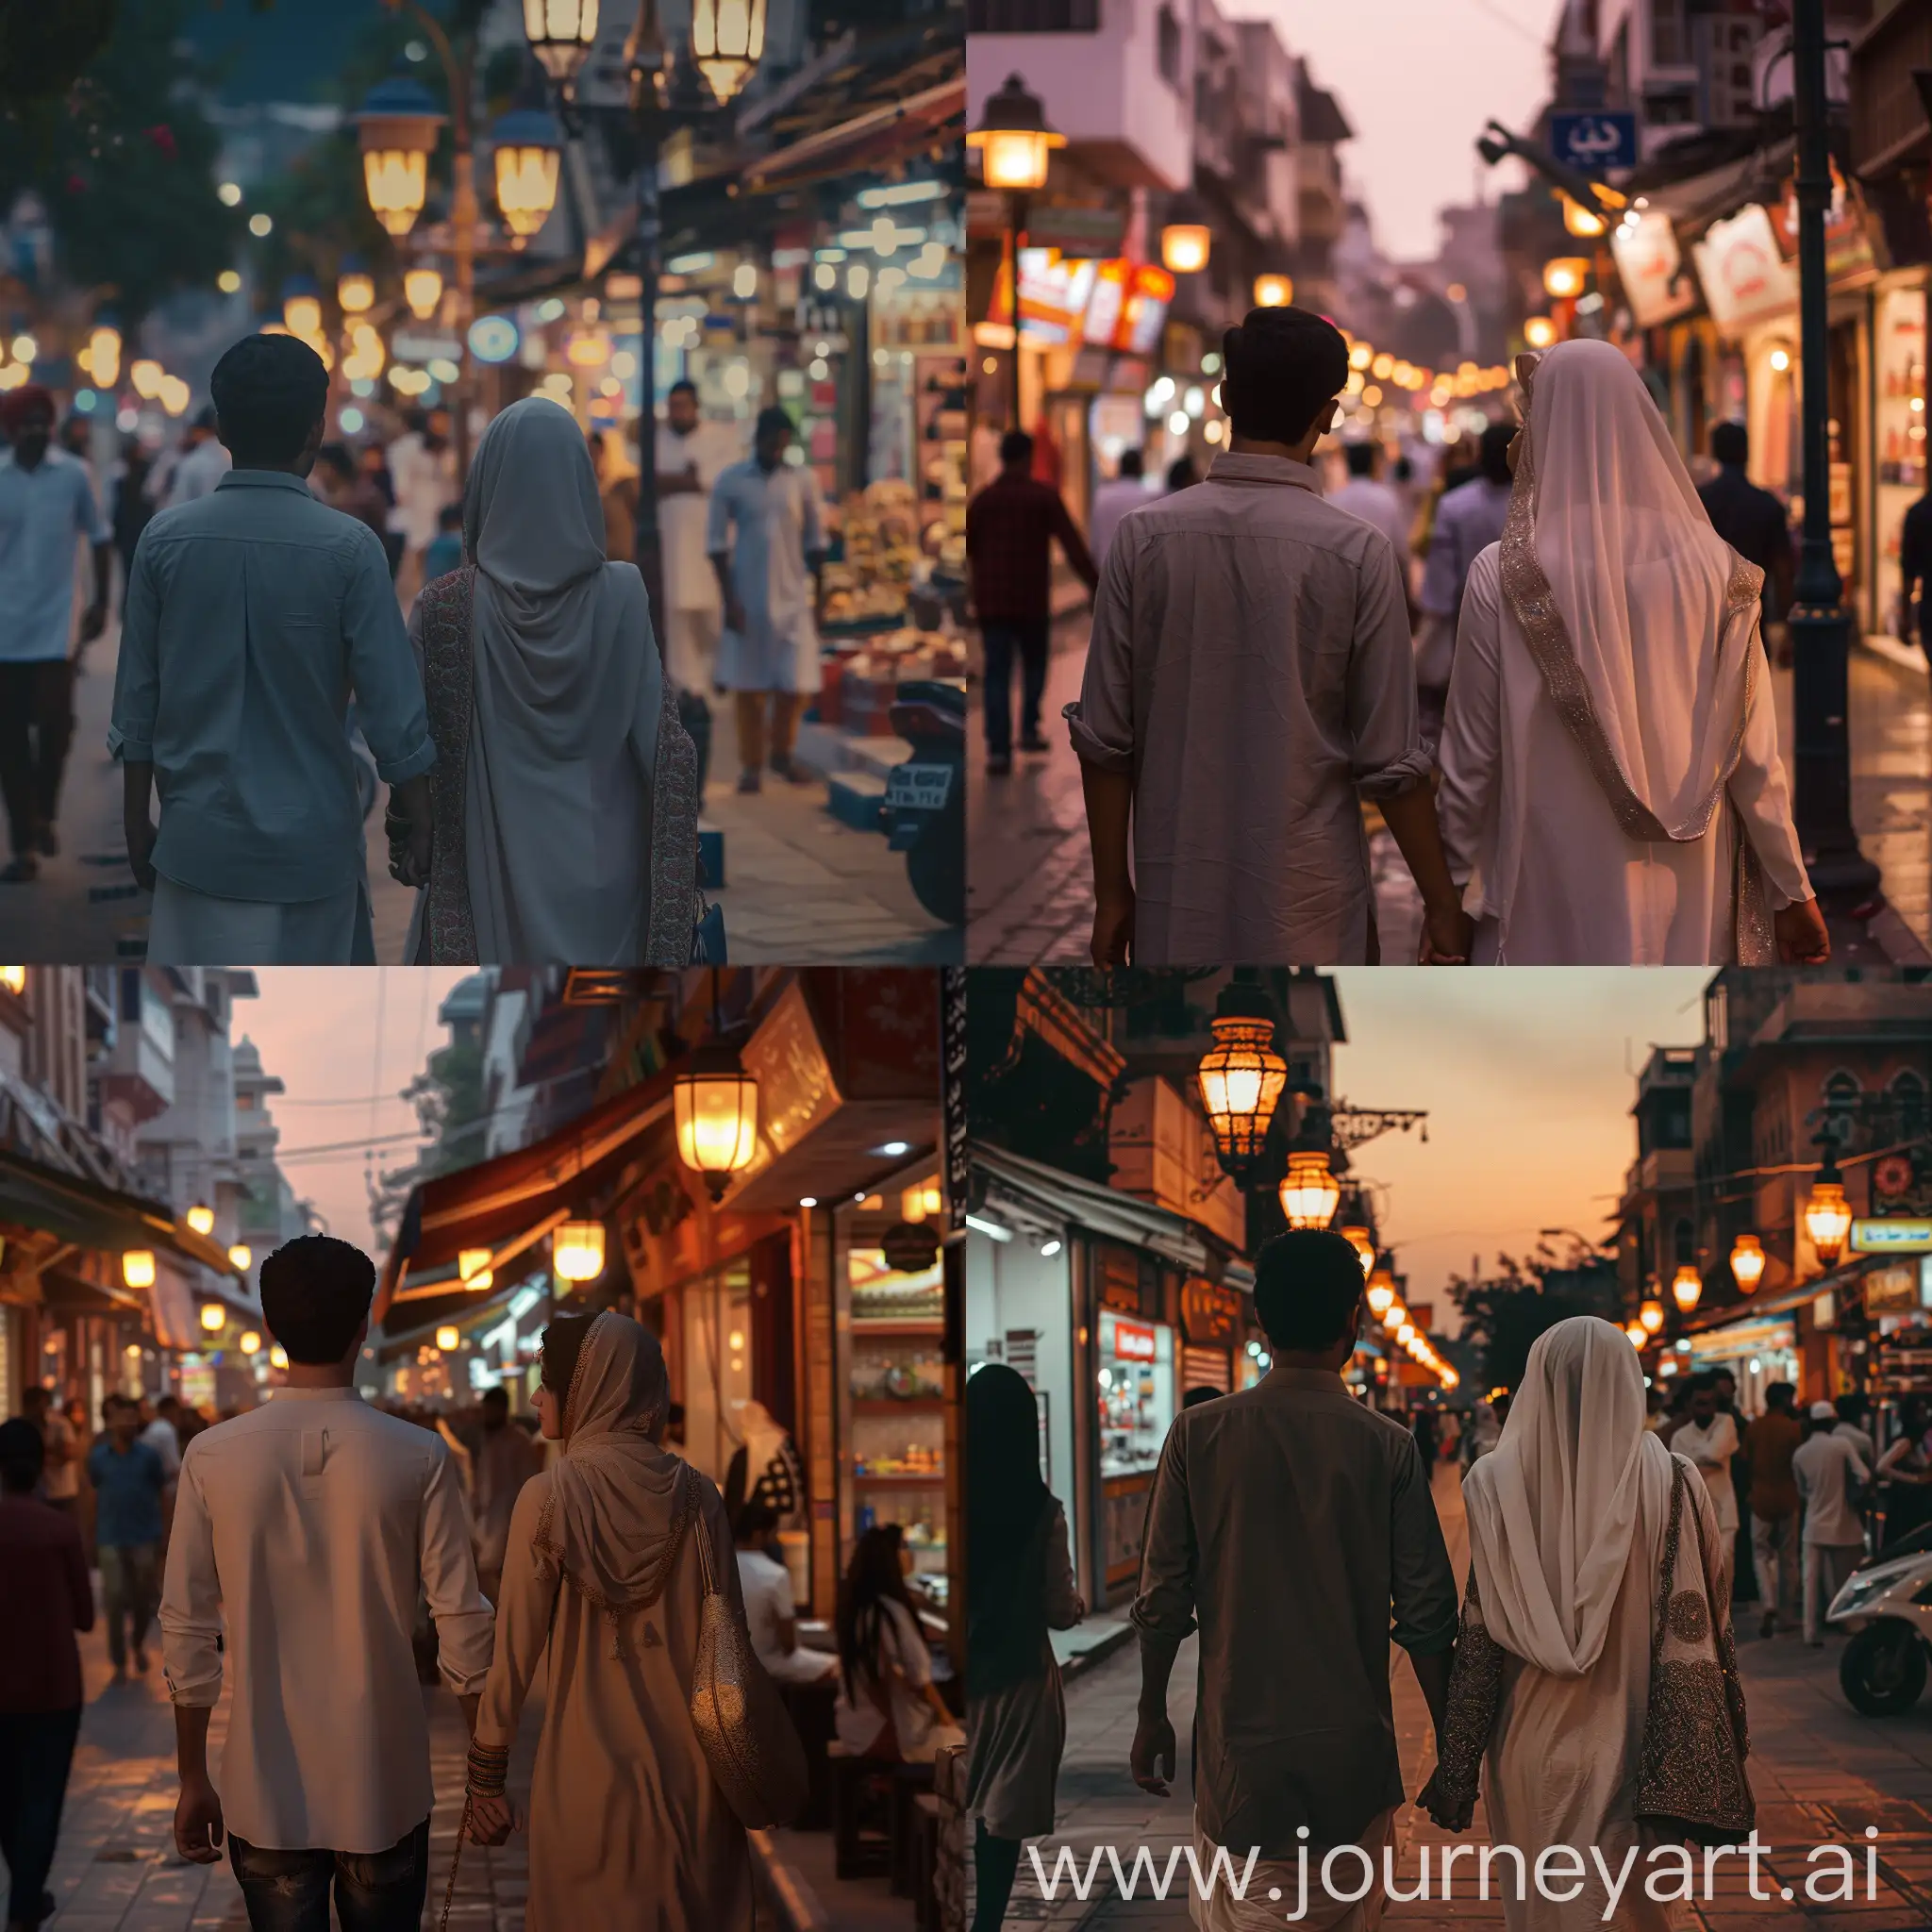 Indian-Muslim-Honeymoon-Couple-Walking-HandinHand-in-Bustling-City-Street-at-Dusk